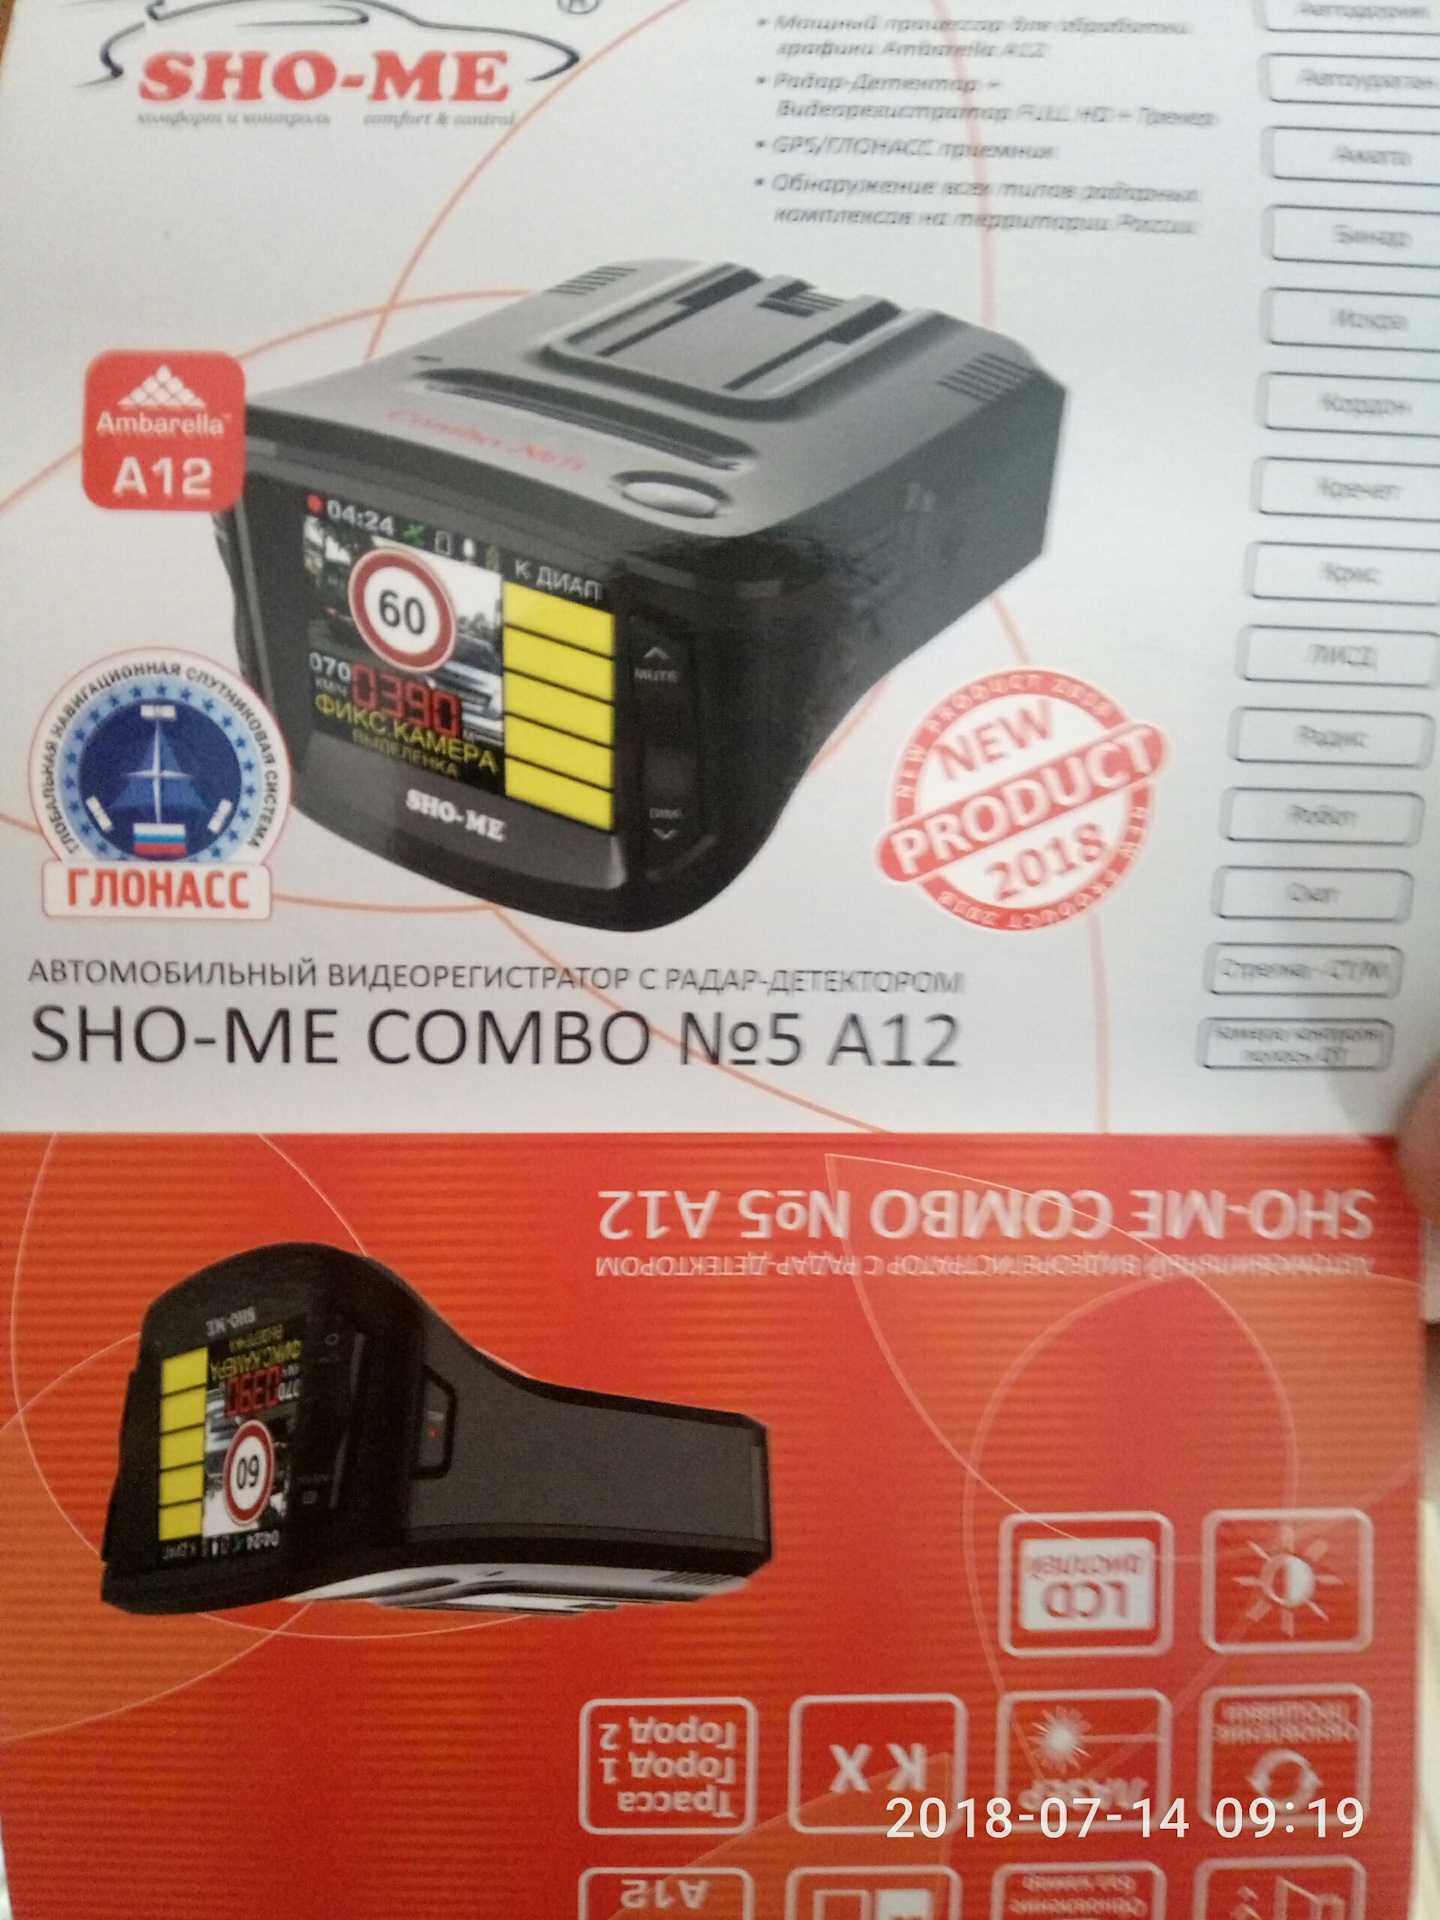 SHO-ME Combo №5 А12 - короткий но максимально информативный обзор Для большего удобства добавлены характеристики отзывы и видео